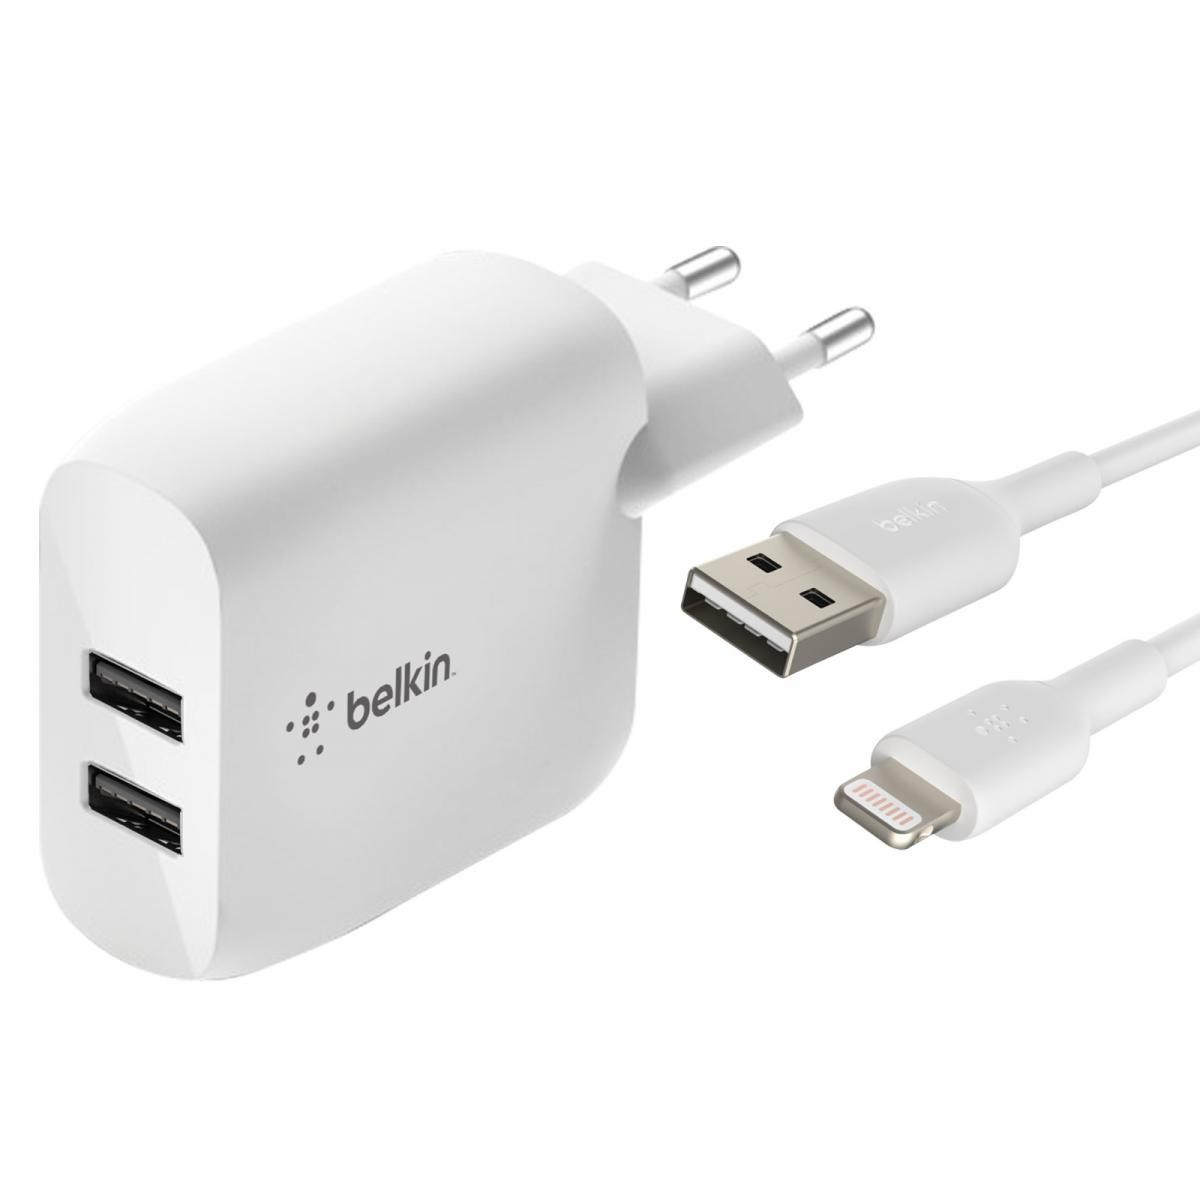 Chargeur 2x USB 24W + Câble iPhone / iPad, Belkin